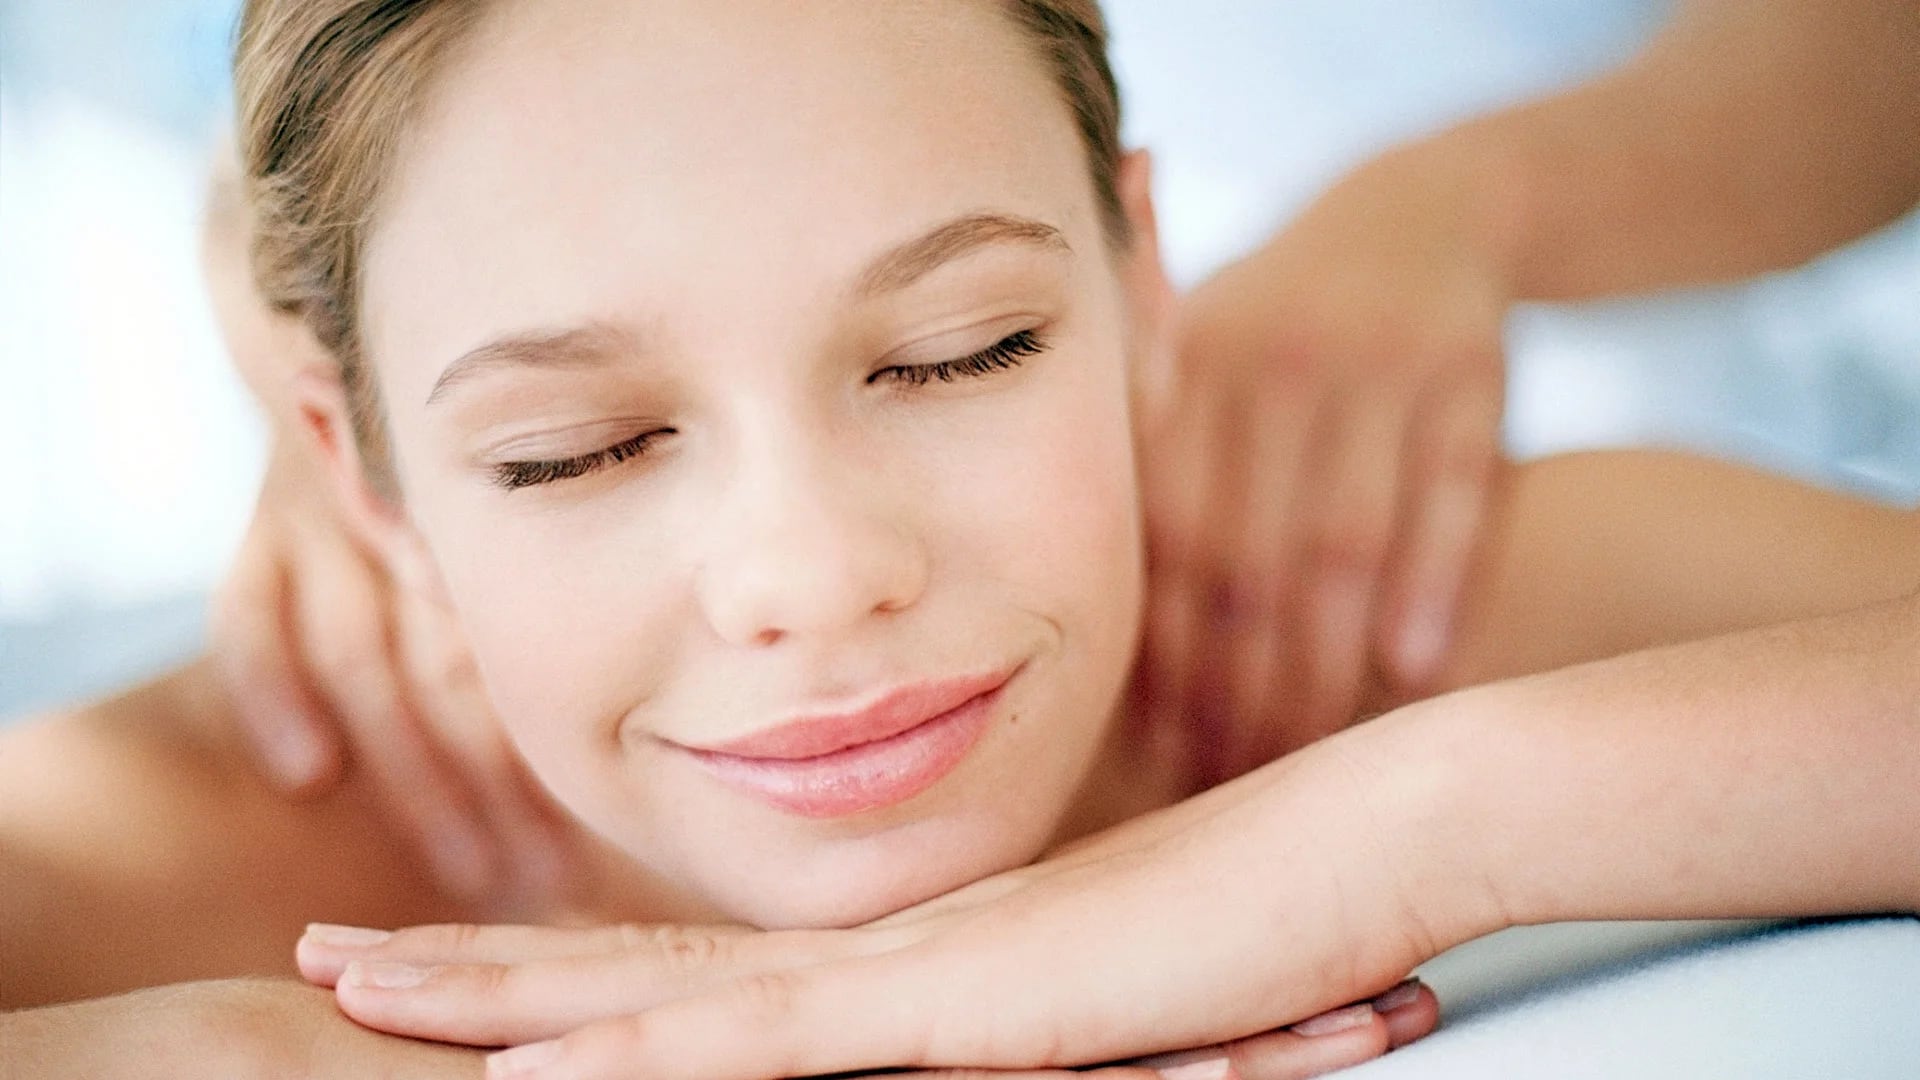 El masaje ayuda a mejorar el estado de ánimo y la relajación al mismo tiempo que aumenta la confianza y la autoimagen (Gaetty images)